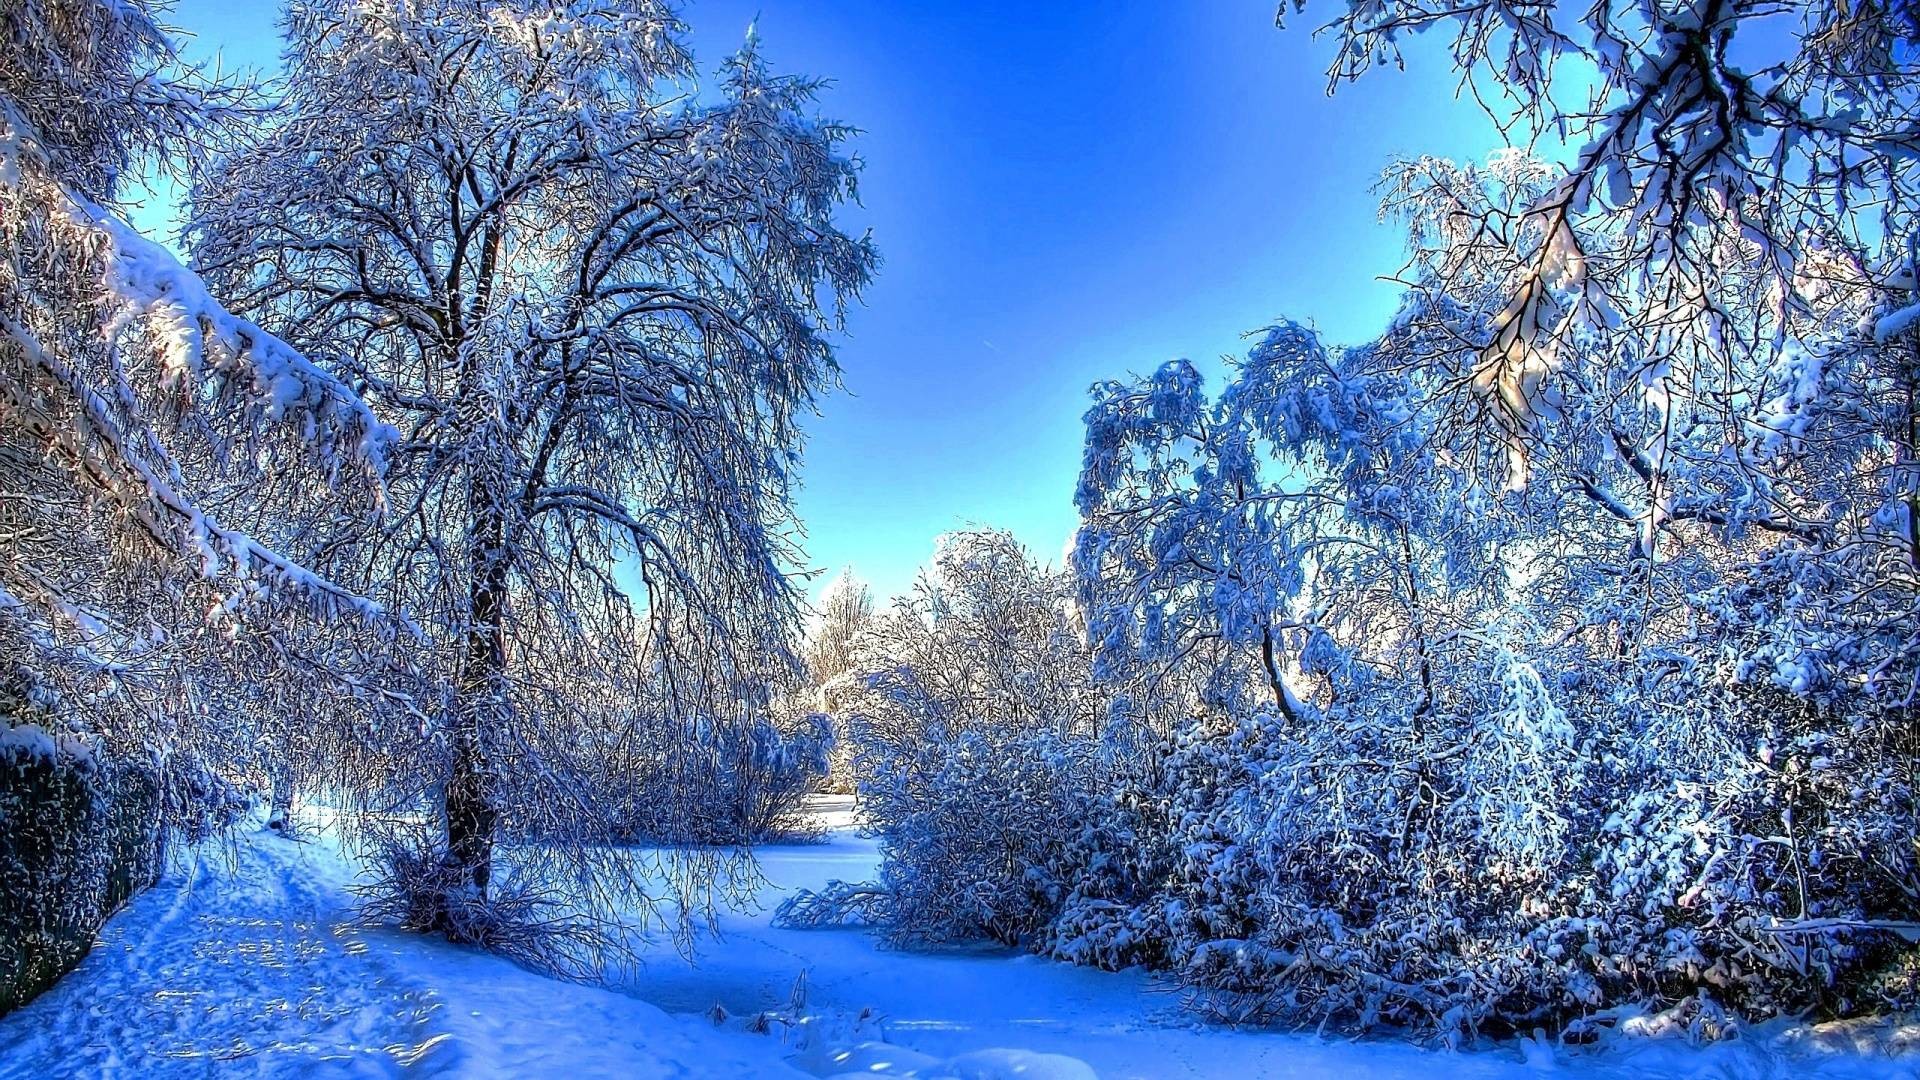 1920x1080 Blue Winter Full of Snow HD Wallpaper [1920 x 1080] ...